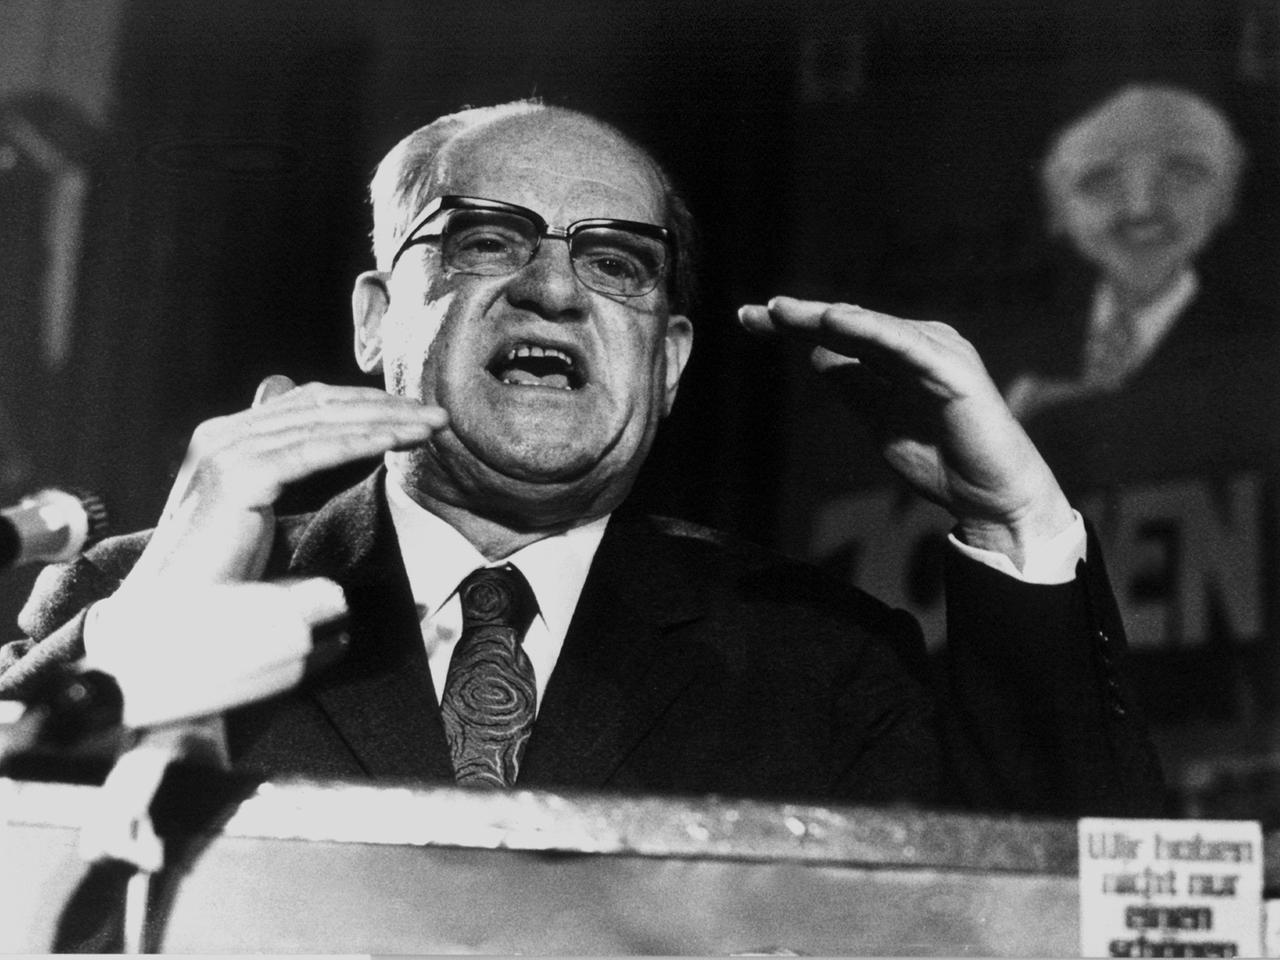 Der Bundestagsfraktionsvorsitzende Herbert Wehner spricht am 16.04.1971 auf der SPD-Wahlkampfveranstaltung für die bevorstehenden Landtagswahlen im schleswig-holsteinischen Neumünster.